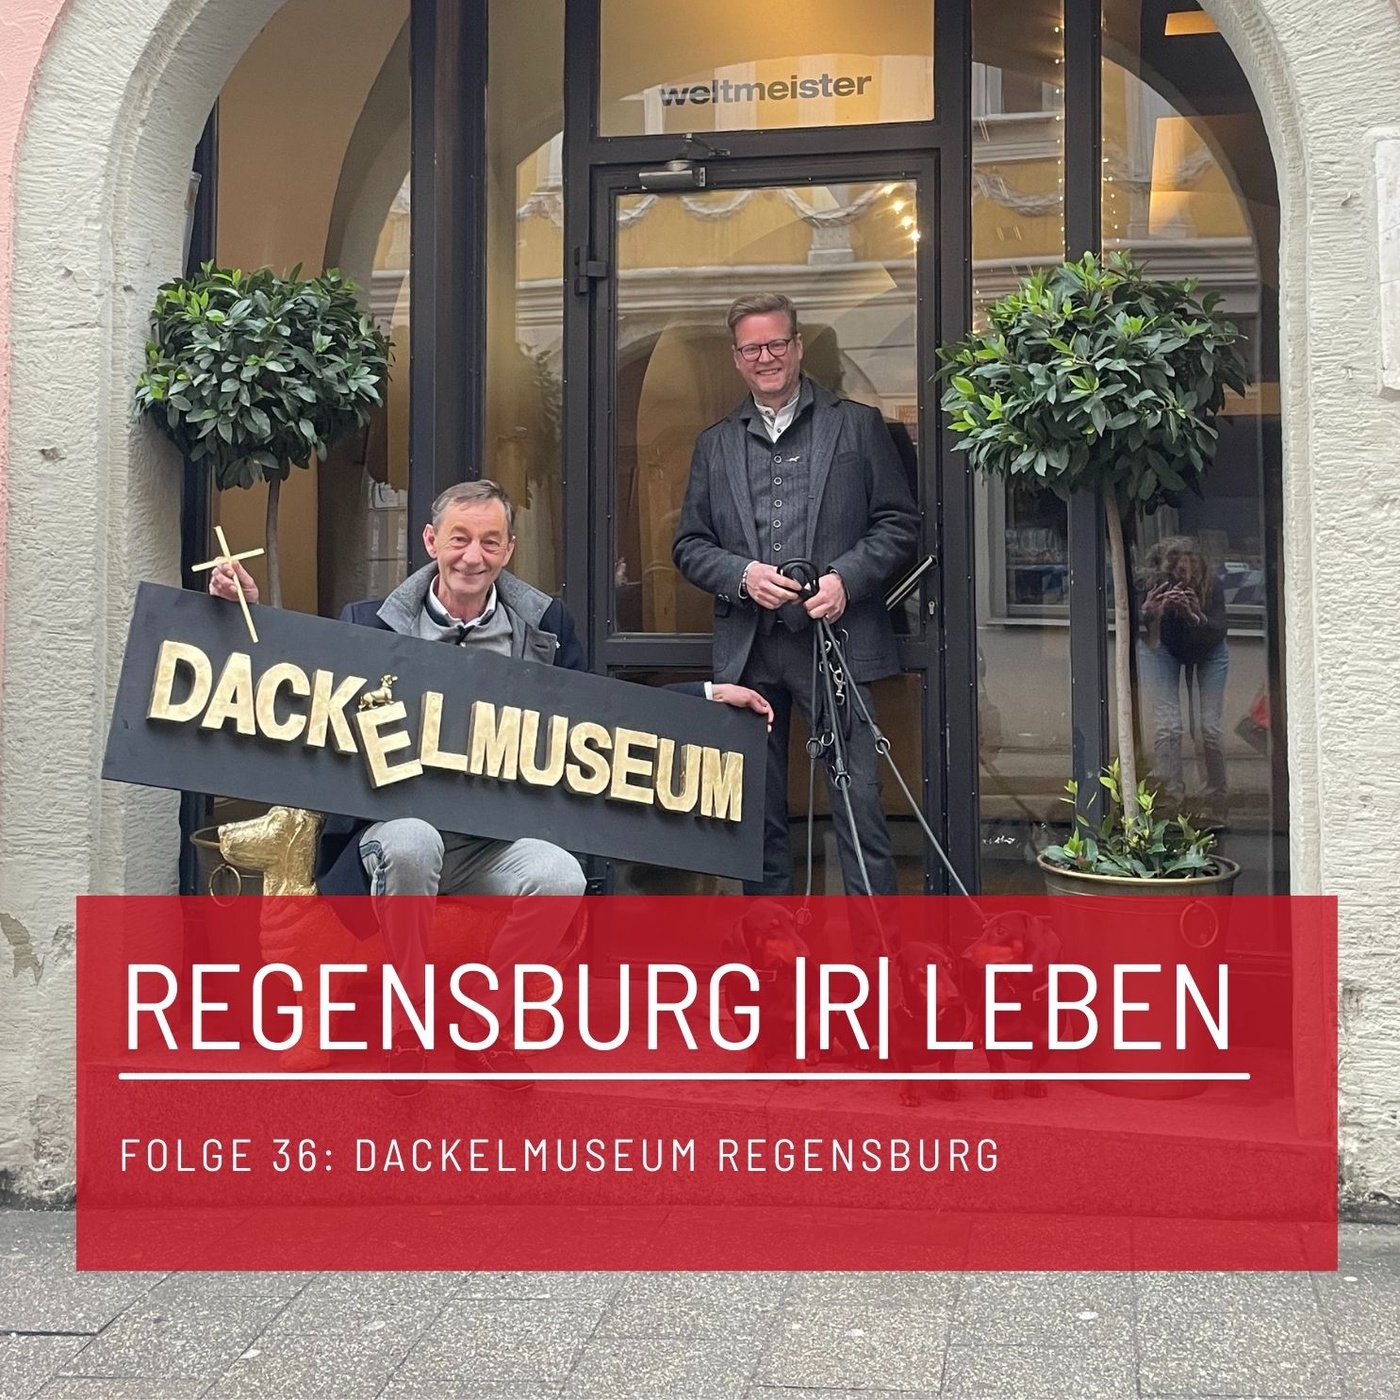 REGENSBURG |R| LEBEN - Folge 36 - Dackelmuseum Regensburg